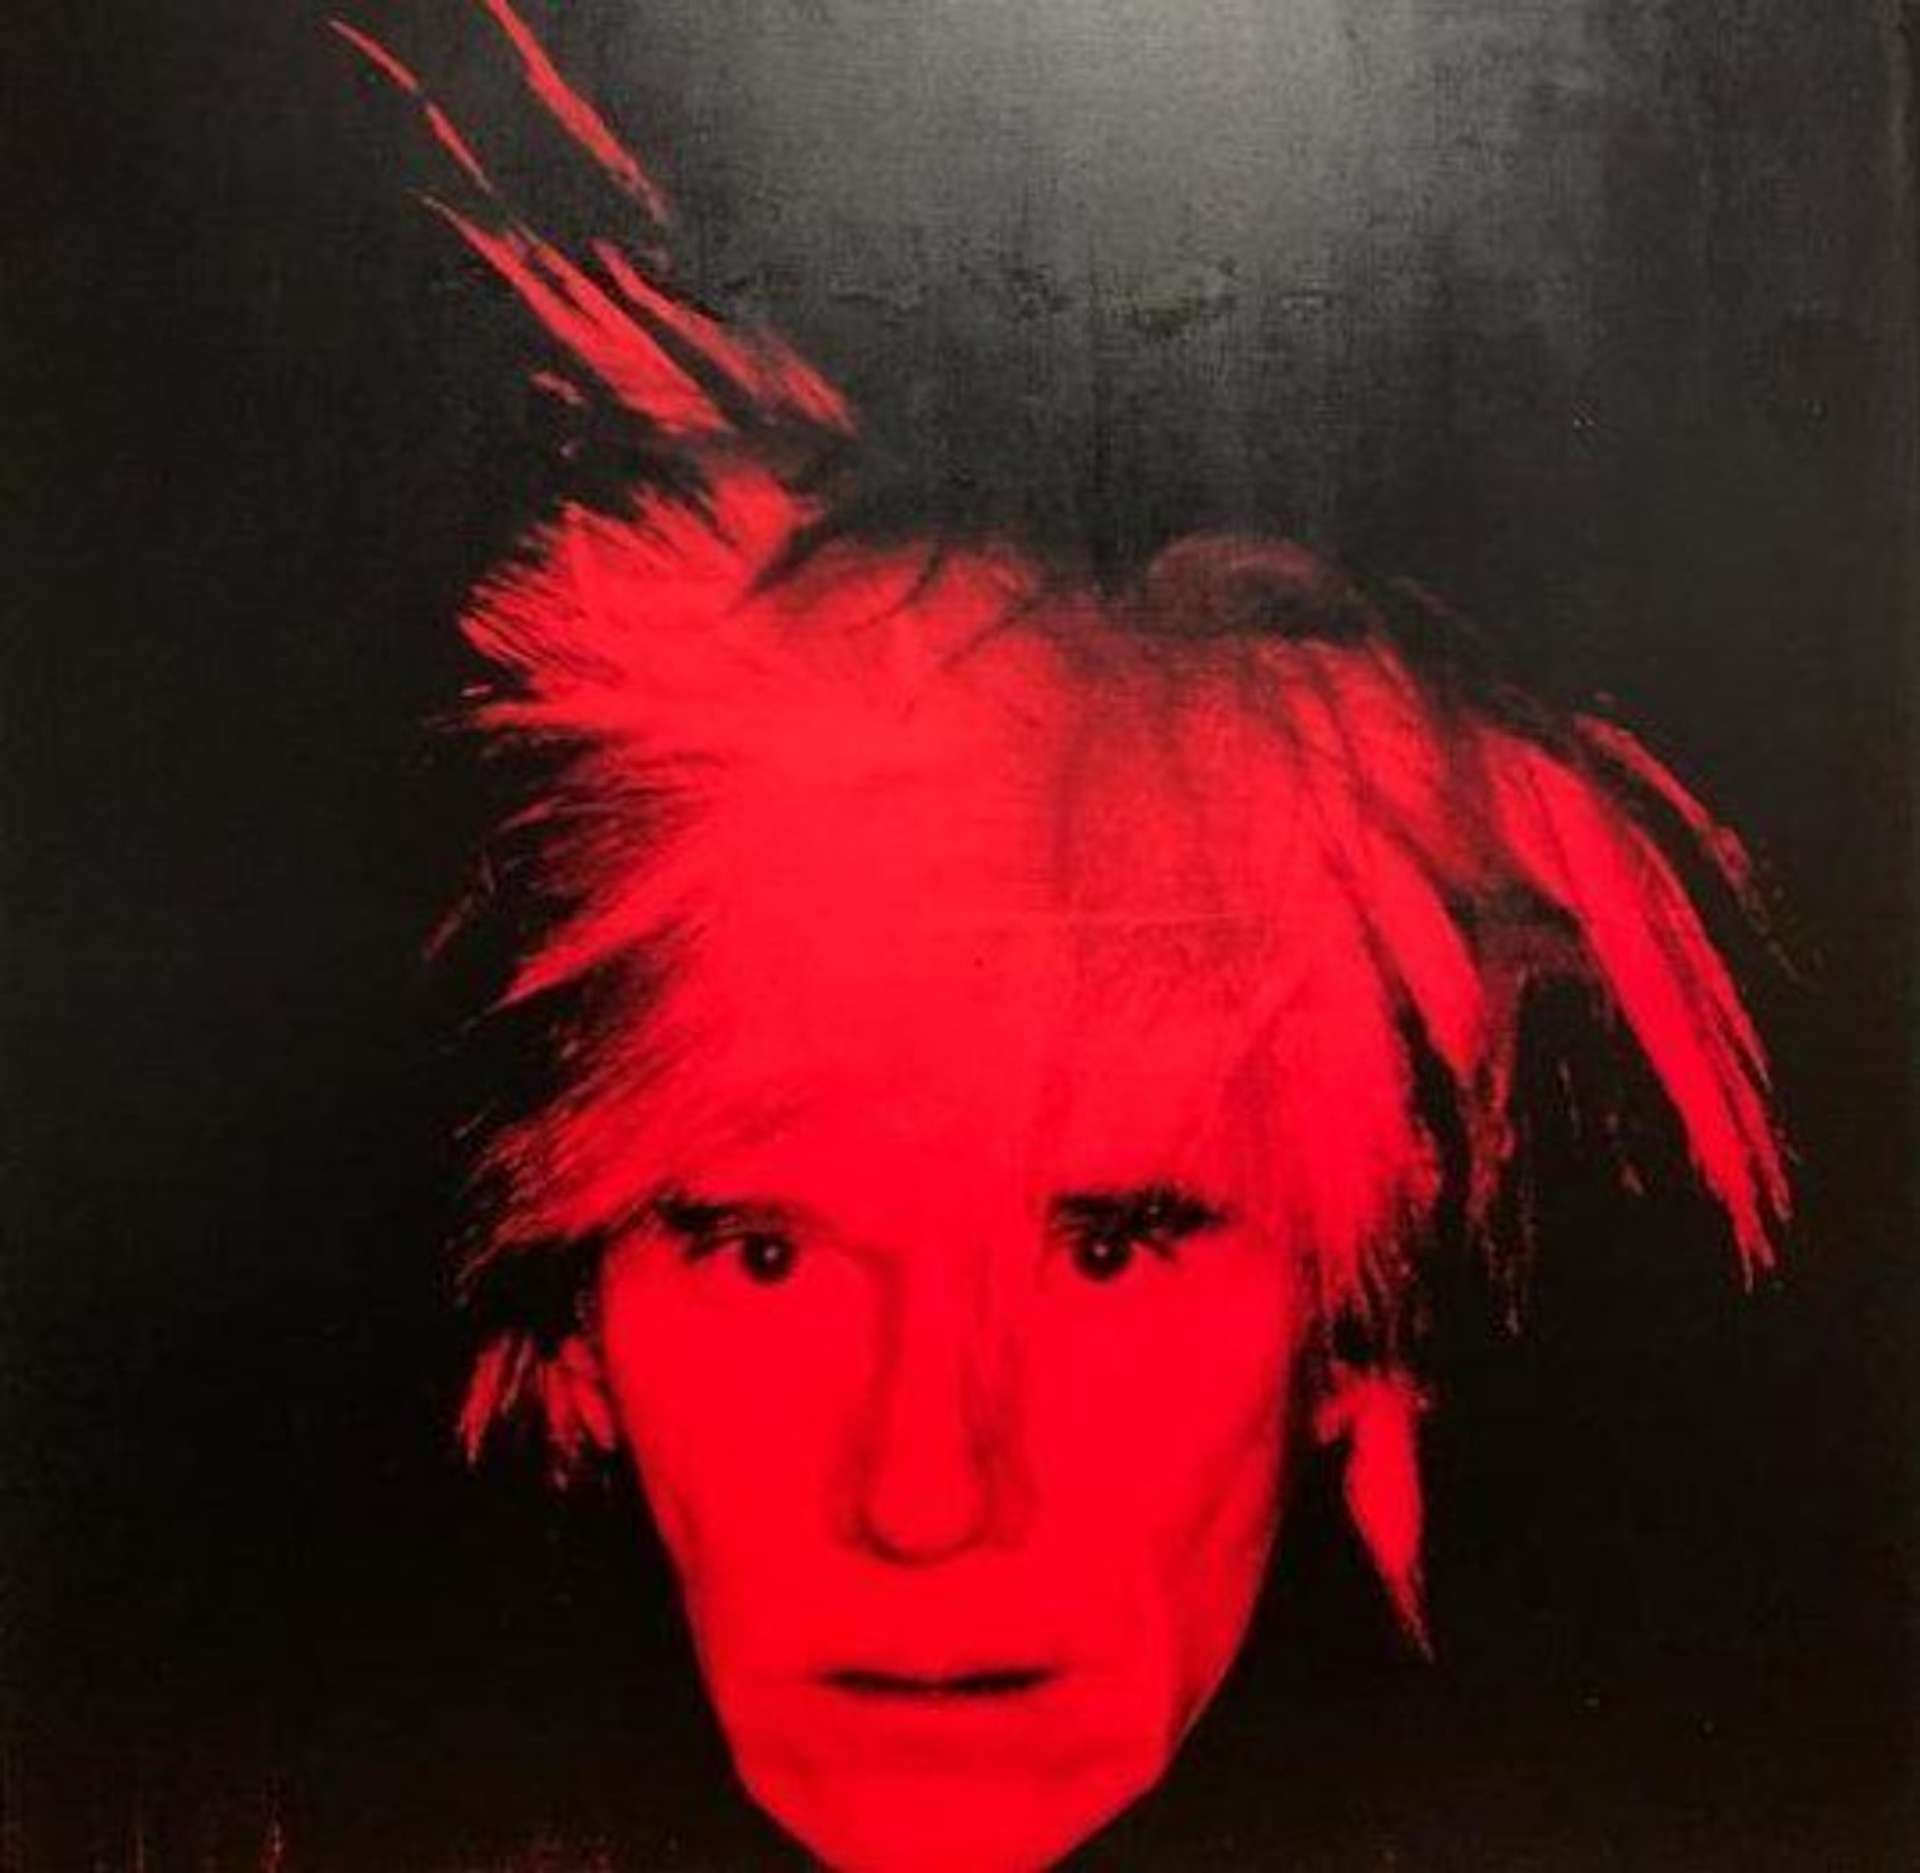 Self-Portrait by Andy Warhol - MyArtBroker